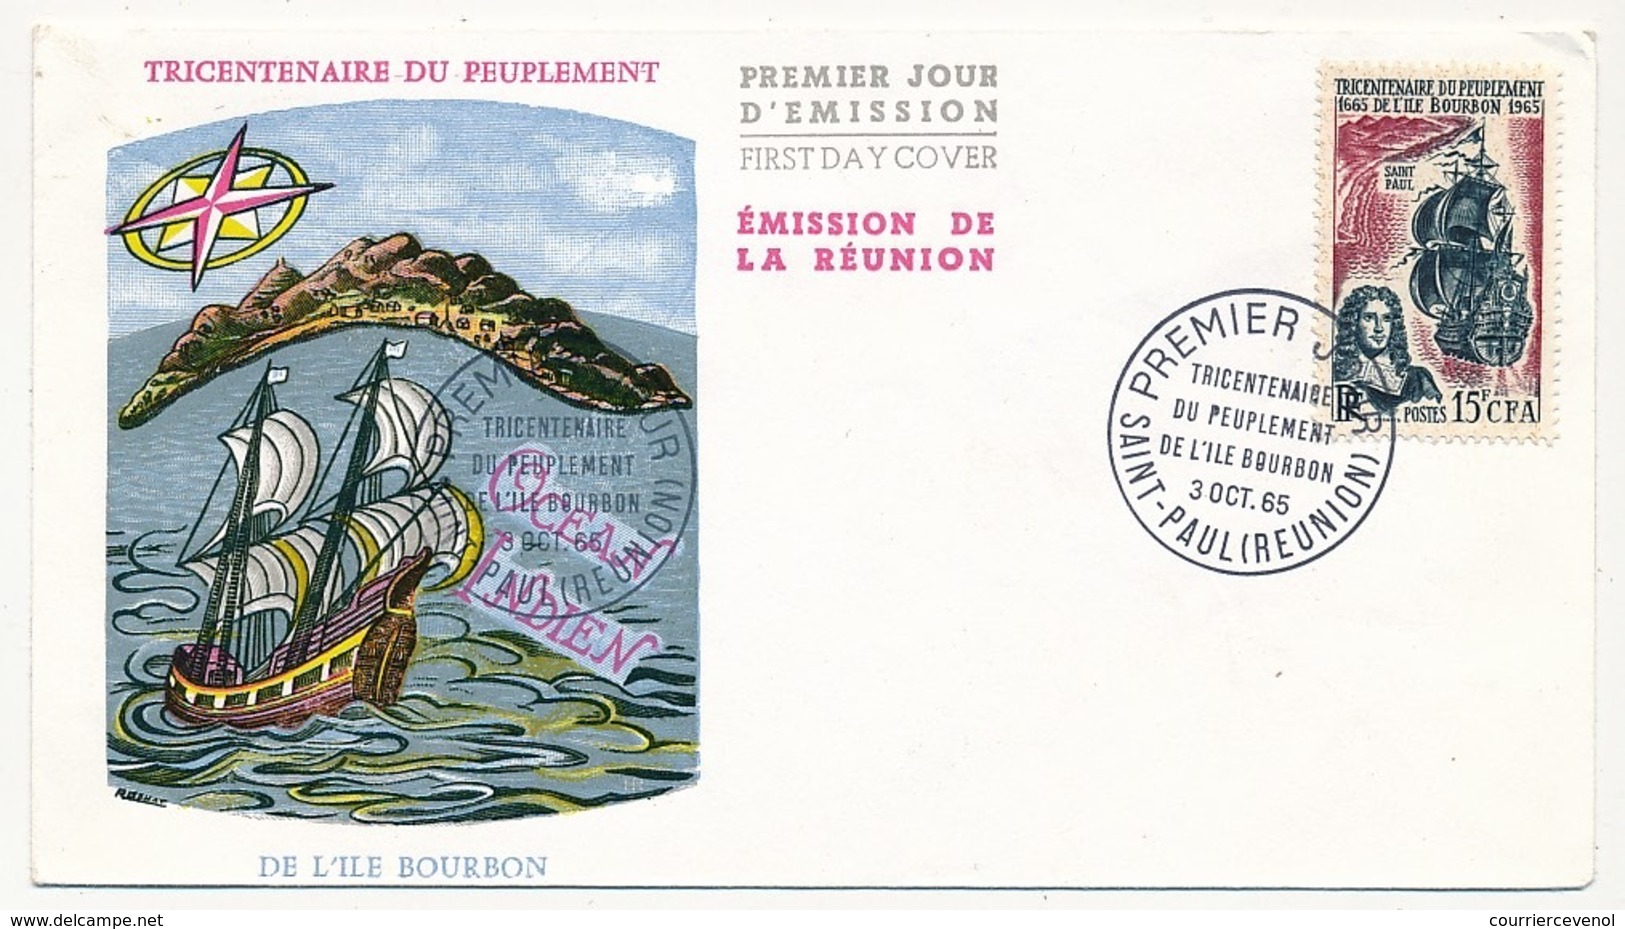 RÉUNION - Enveloppe FDC - 15F CFA - Tricentenaire Du Peuplement De L'Ile Bourbon - 3 Octobre 1965 - Covers & Documents